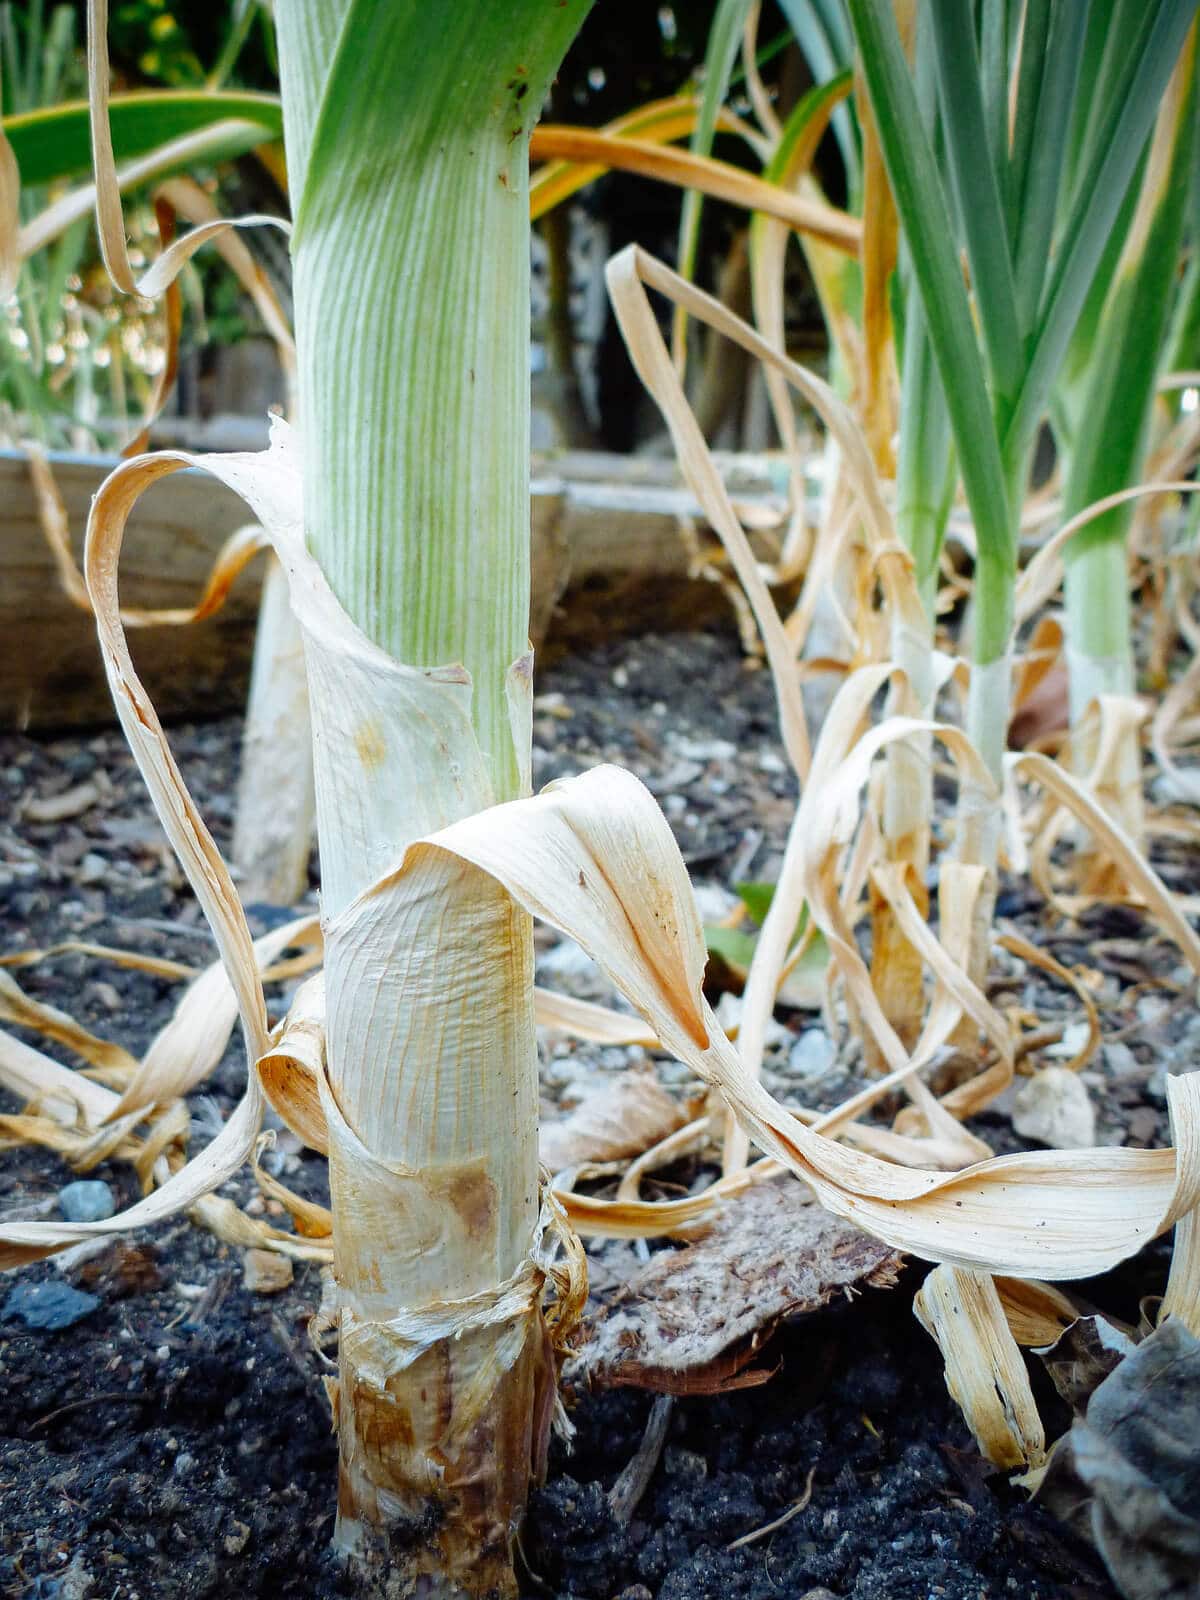 Garlic leaves start to die off